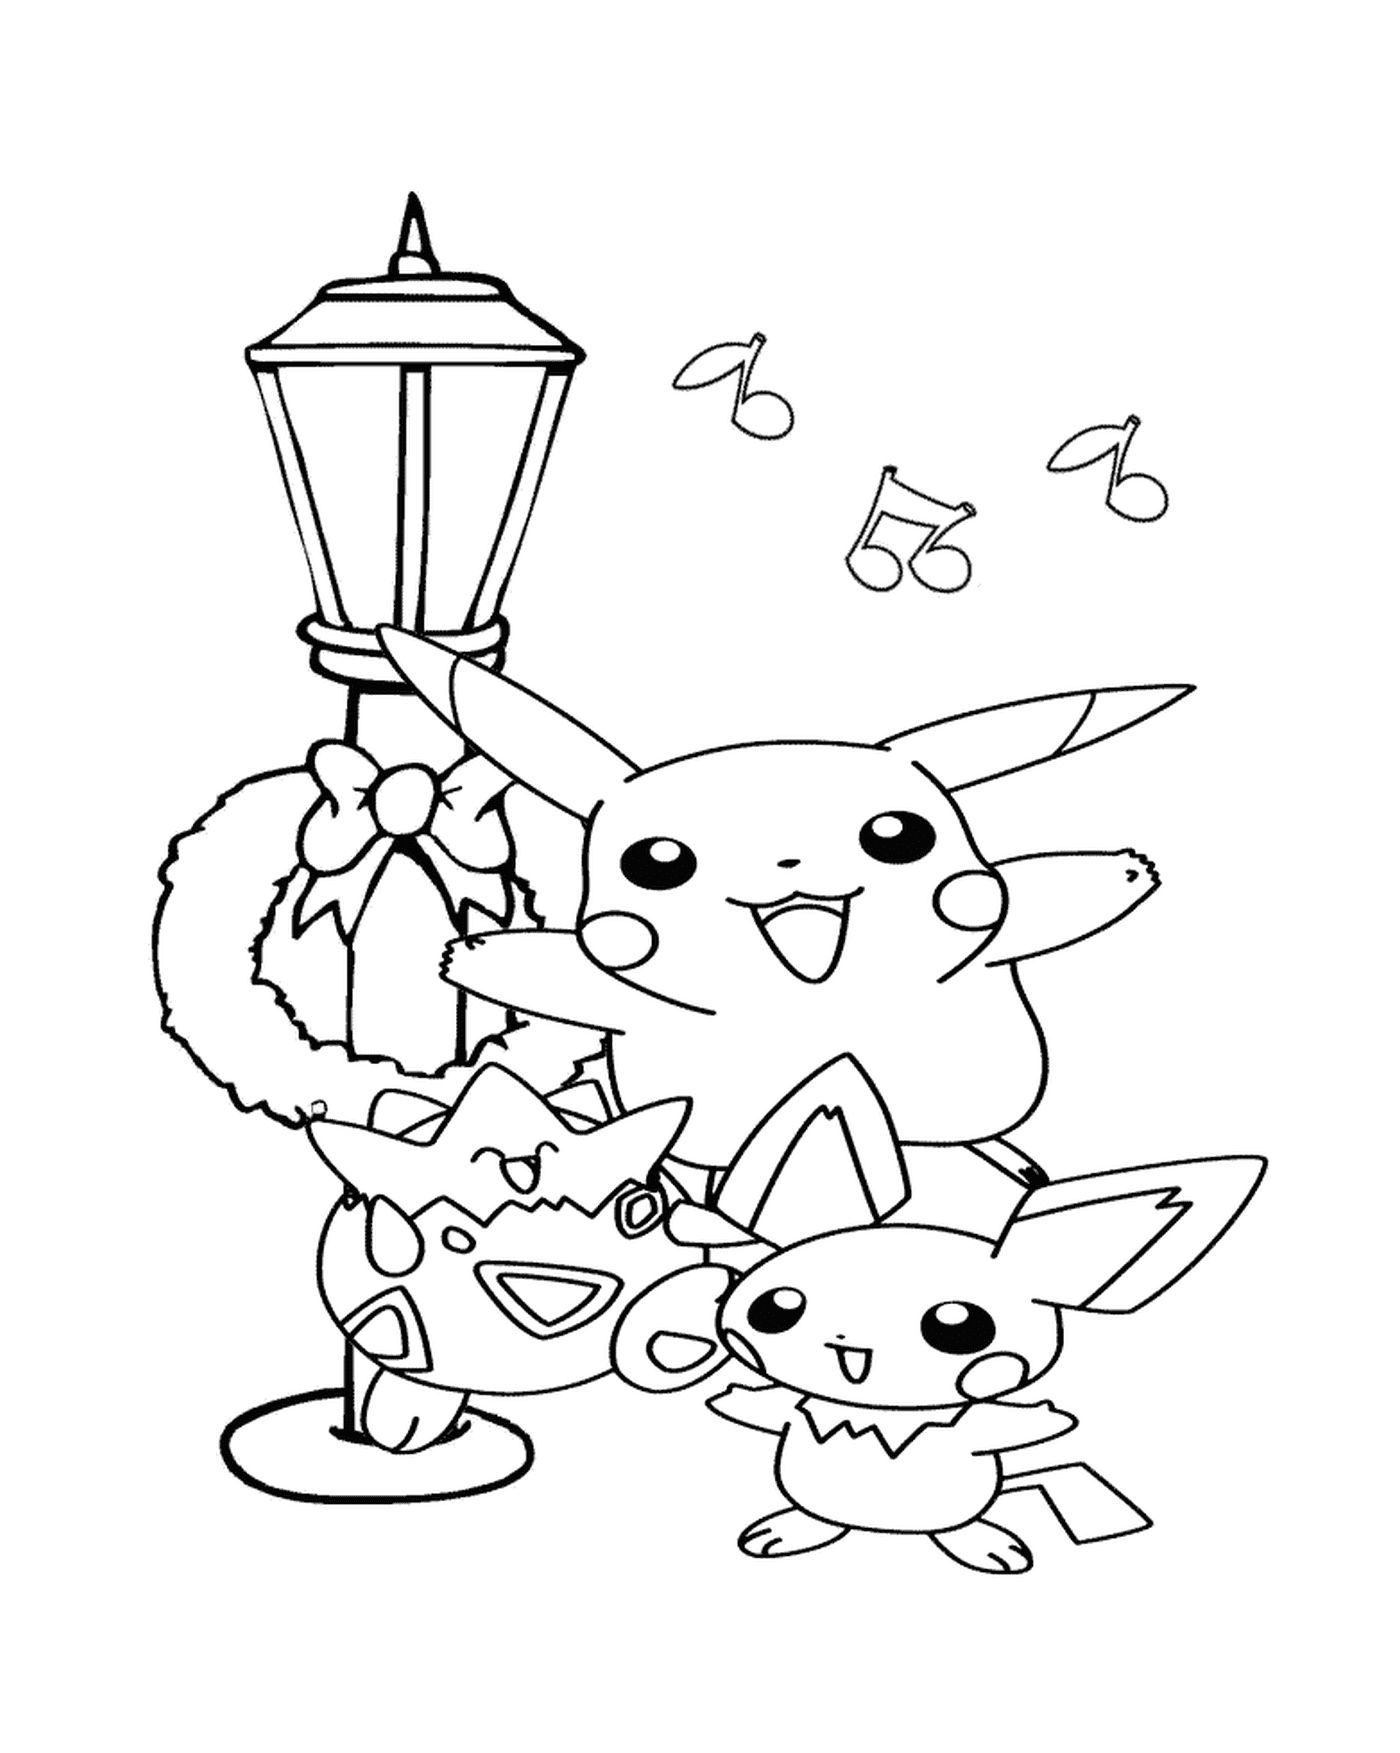  Pikachu y sus amigos cantan 